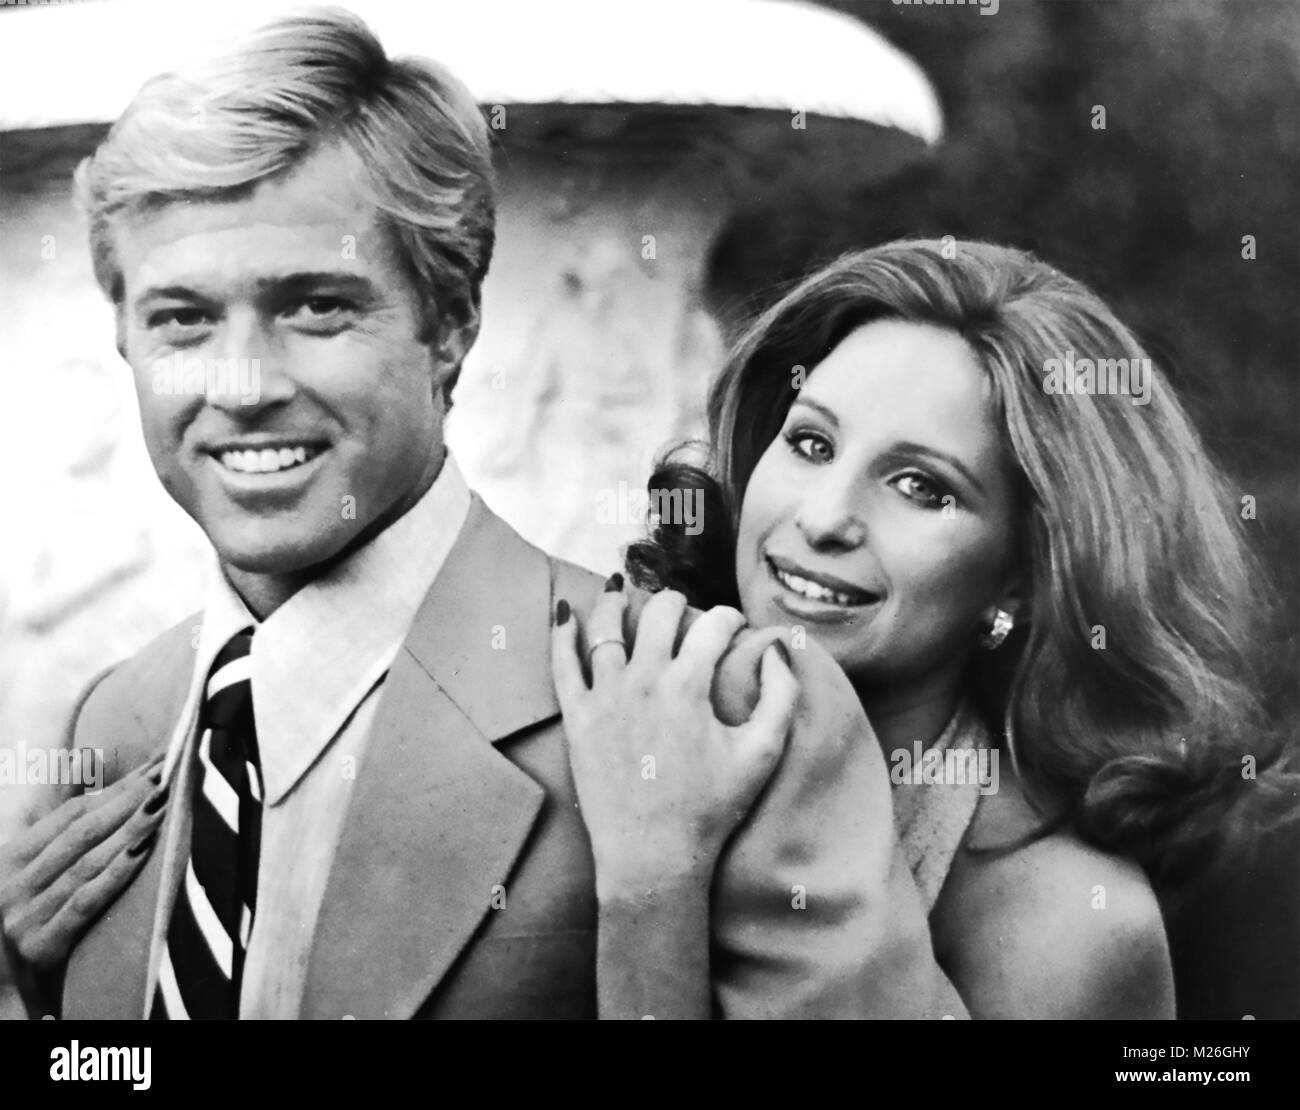 La FAÇON DONT NOUS AVONS ÉTÉ 1973 Columbia Pictures film avec Barbra Streisand et Robert Redford Banque D'Images